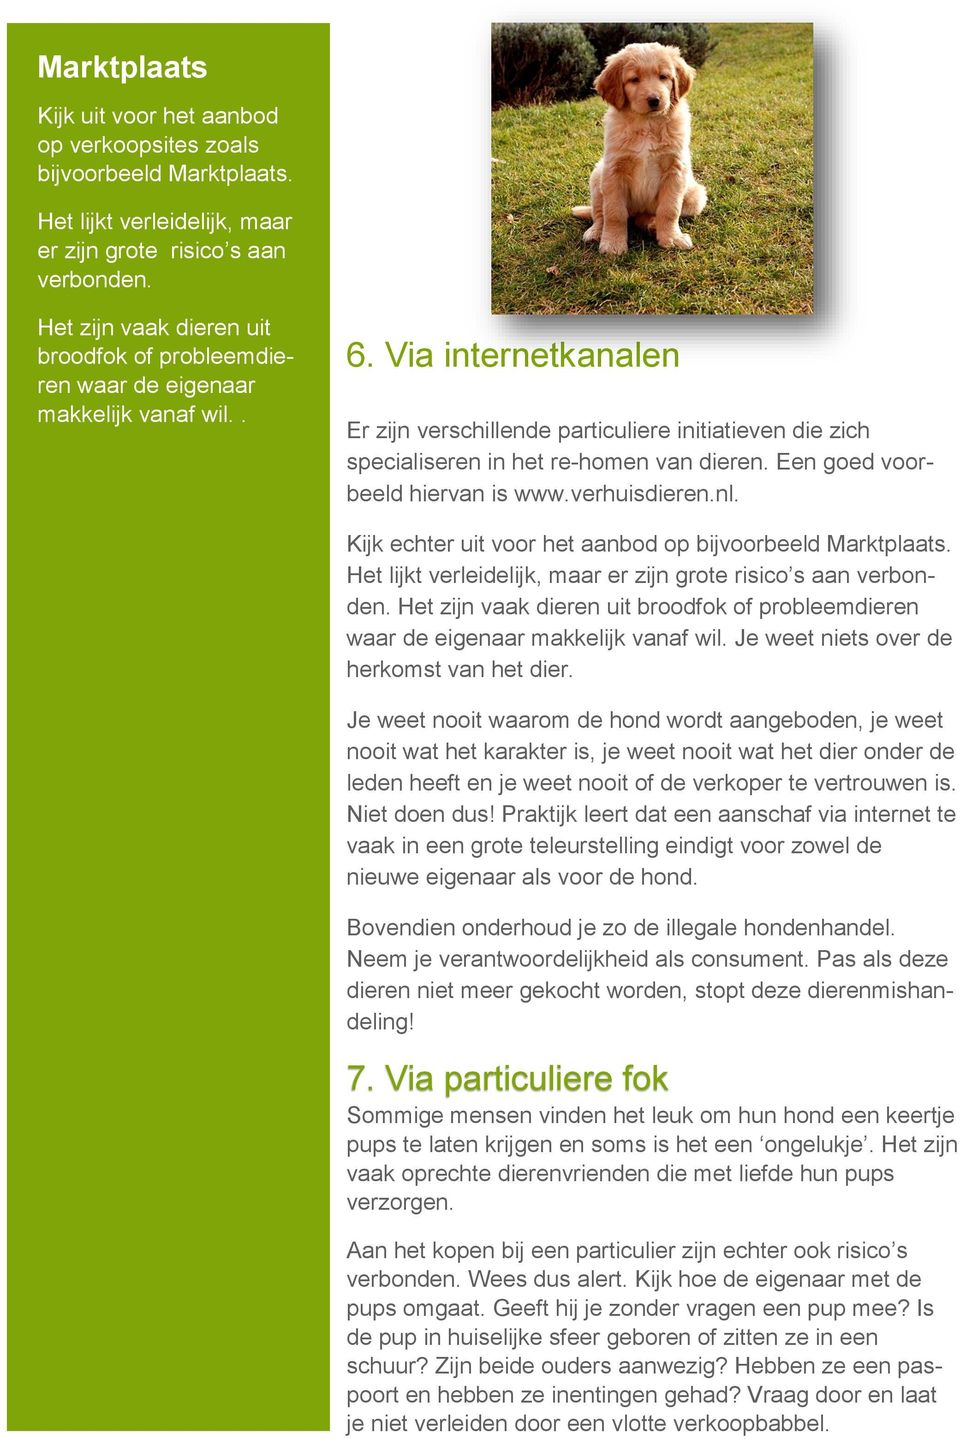 Via internetkanalen Er zijn verschillende particuliere initiatieven die zich specialiseren in het re-homen van dieren. Een goed voorbeeld hiervan is www.verhuisdieren.nl.